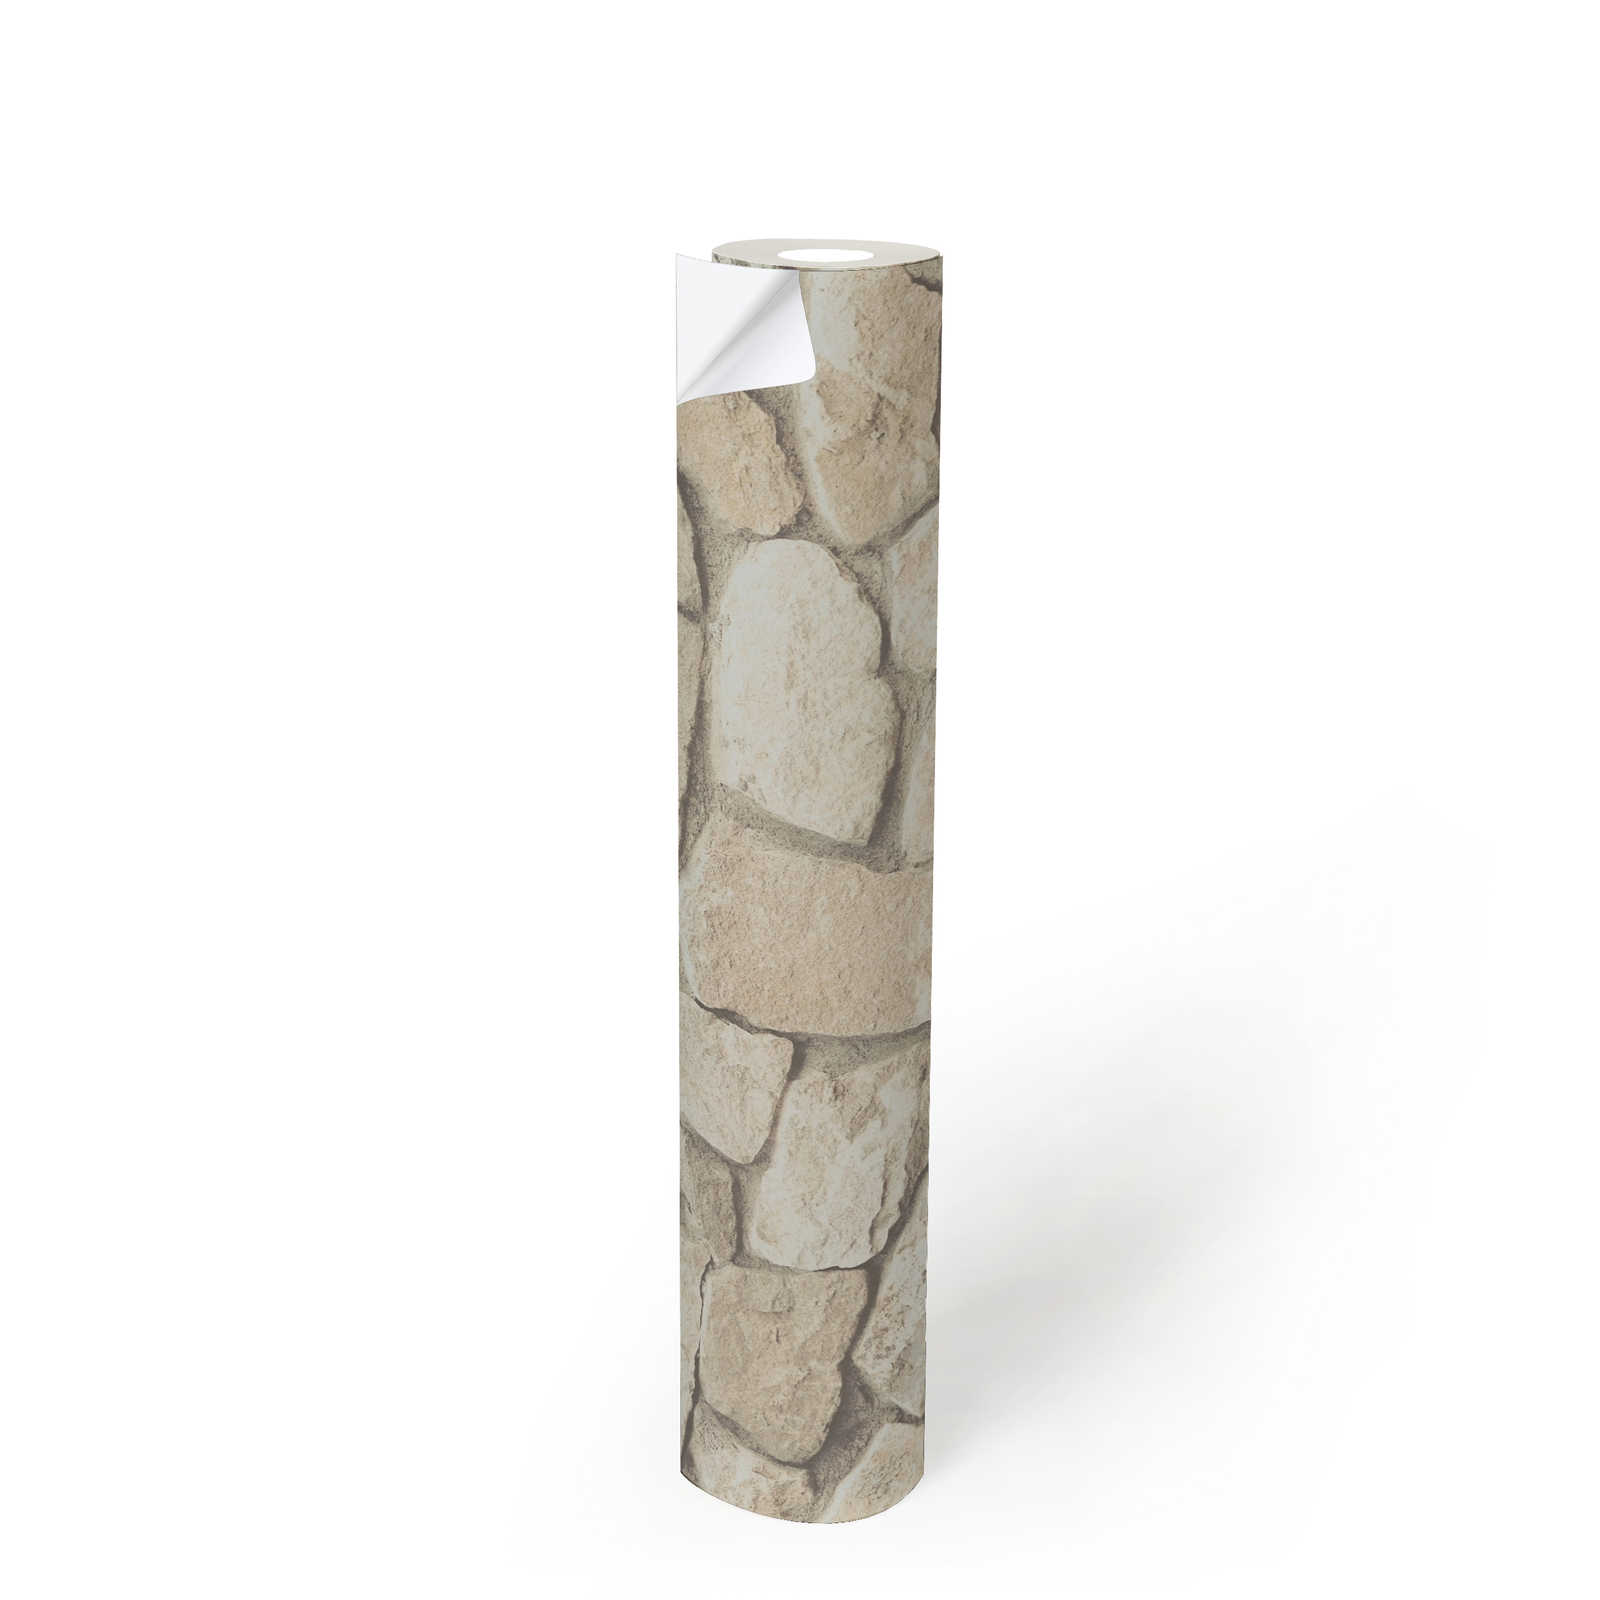             Papel pintado autoadhesivo | aspecto de piedra natural con efecto 3D - beige, crema
        